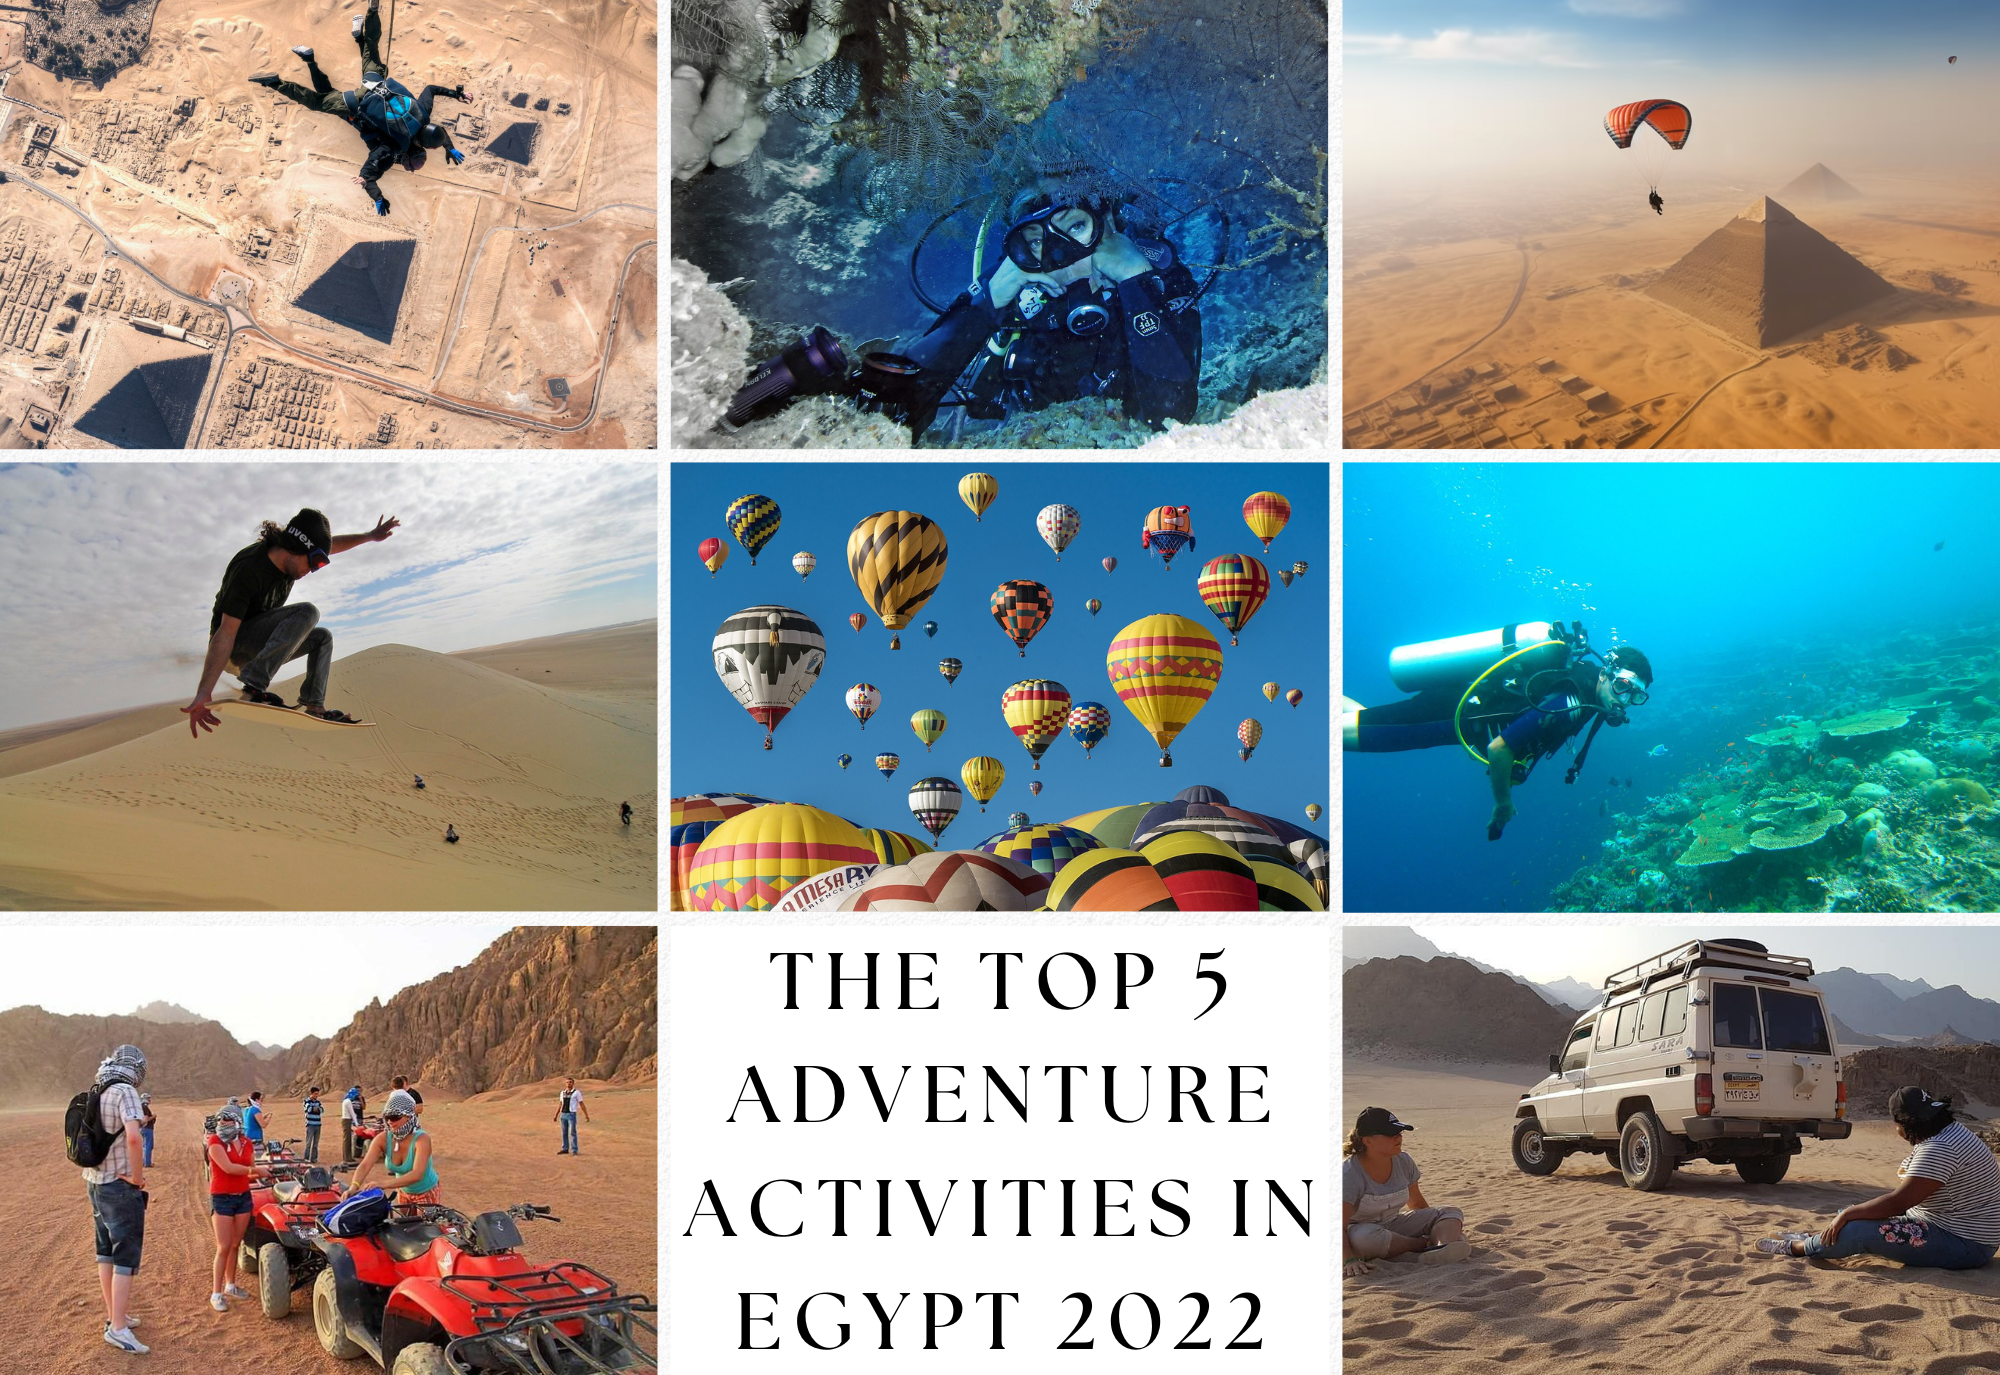 The top 5 Adventure Activities in Egypt 2022